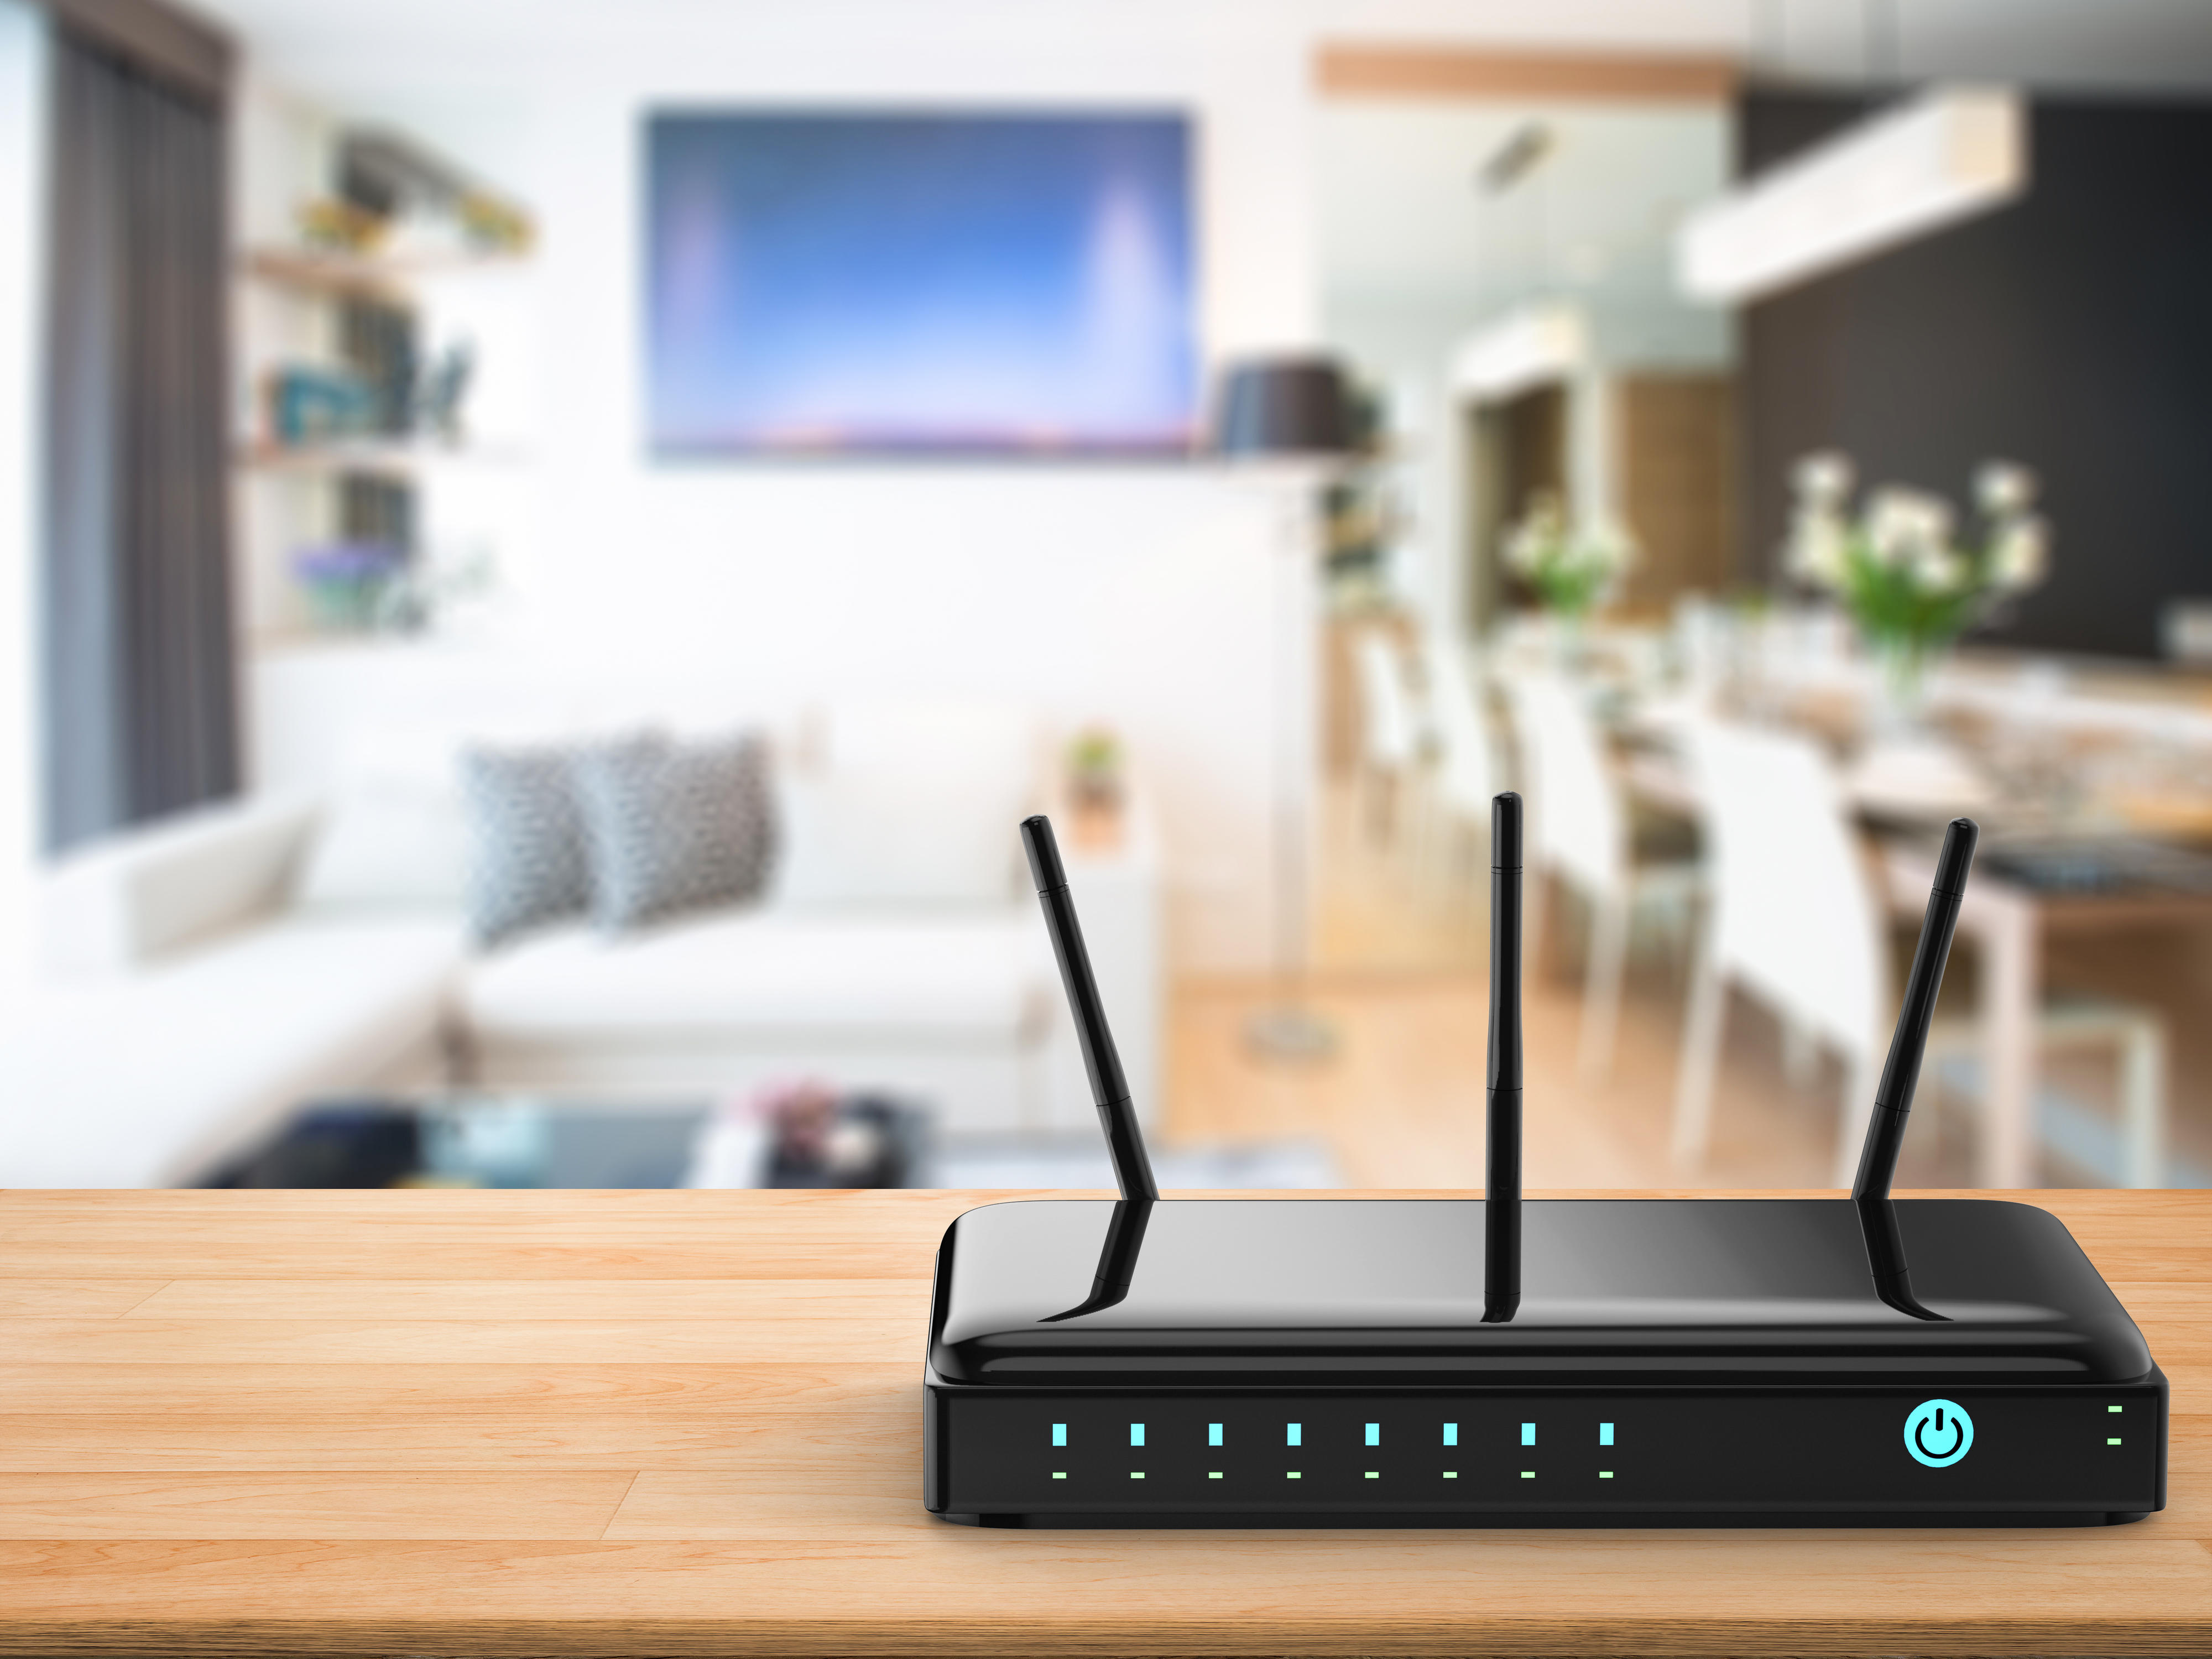 Hvilken trådløs router bør du velge? | Elkjøp